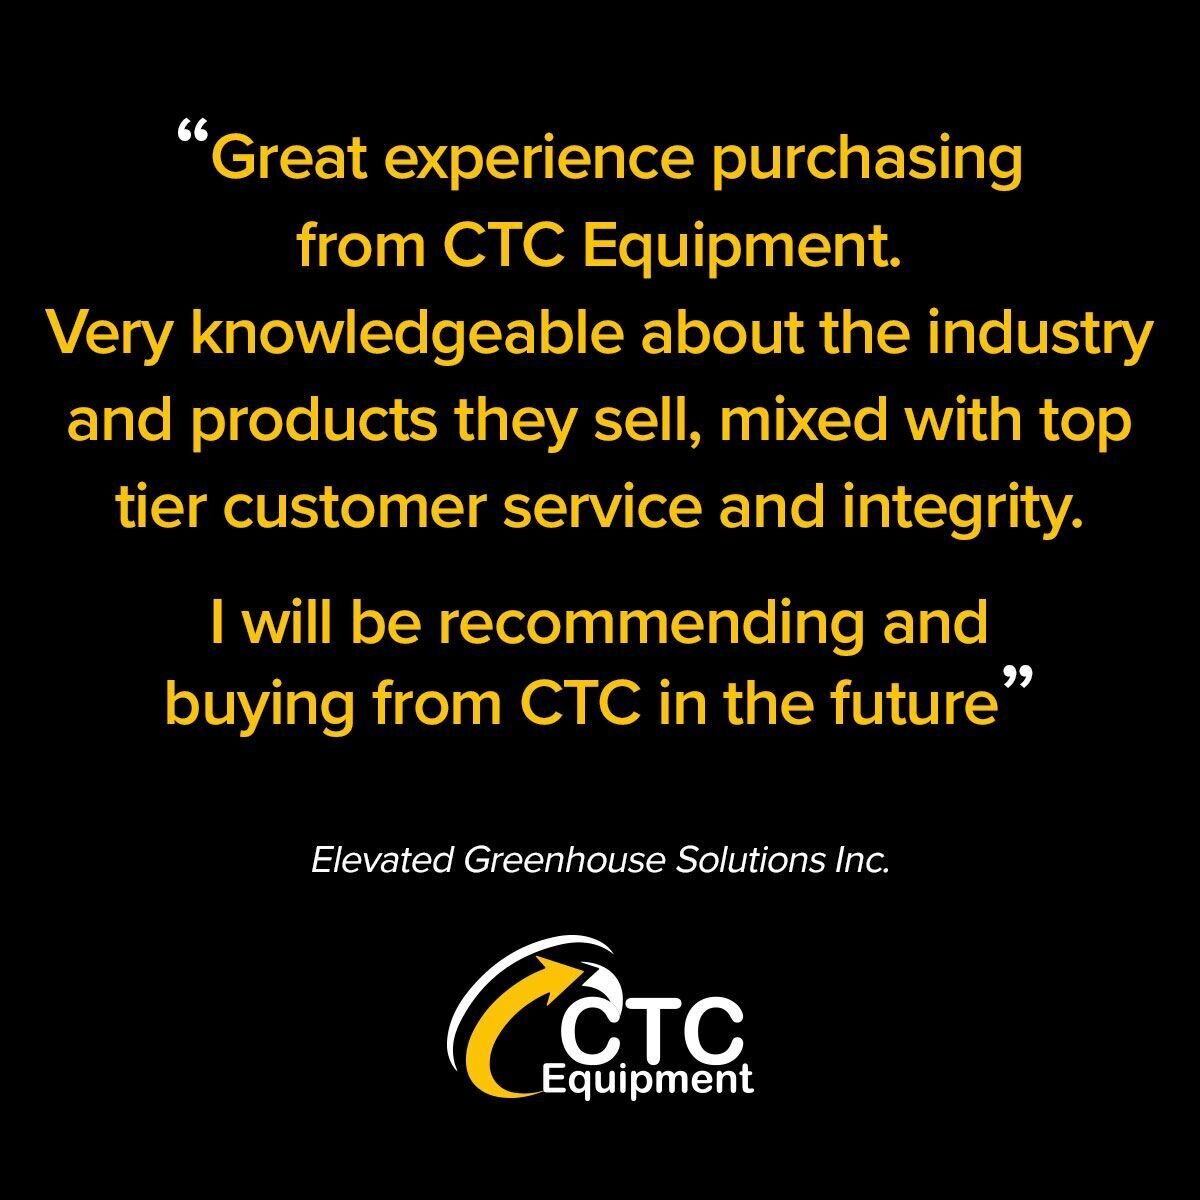 Images CTC Equipment